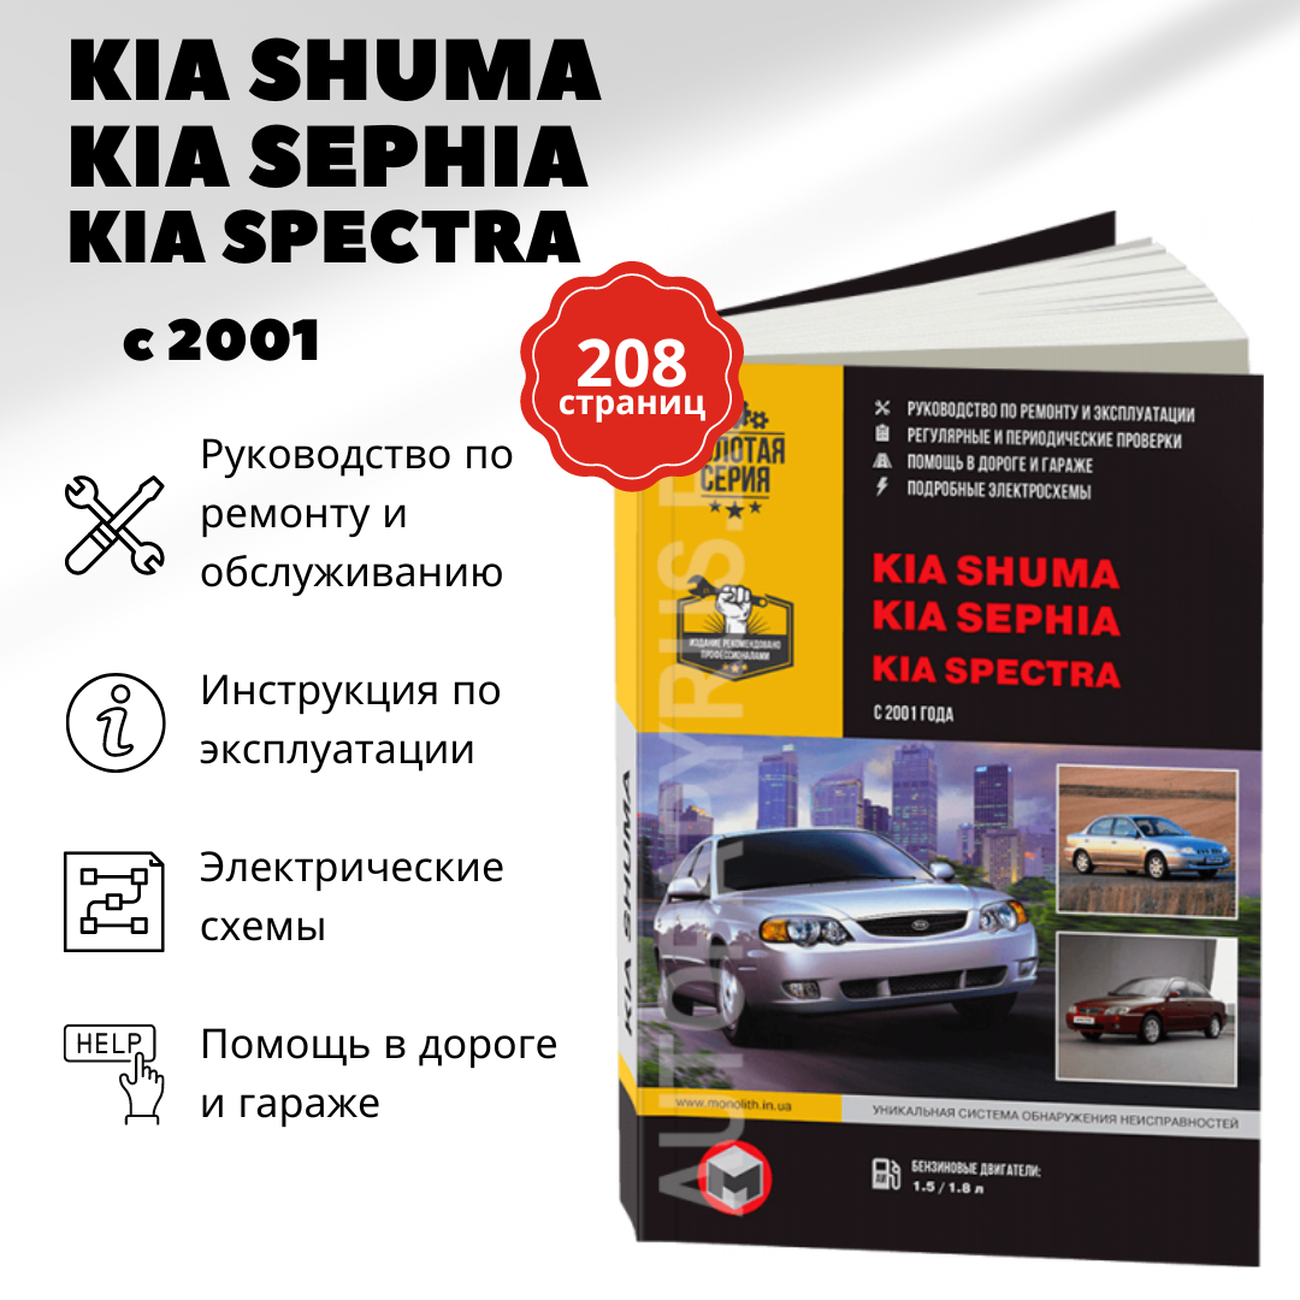 Автокнига: руководство / инструкция по ремонту и эксплуатации KIA SPECTRA (КИА спектра) / SEPHIA (сепия) / SHUMA (КИА шума) бензин с 2001 года выпуска, 978-617-537-104-6, издательство Монолит